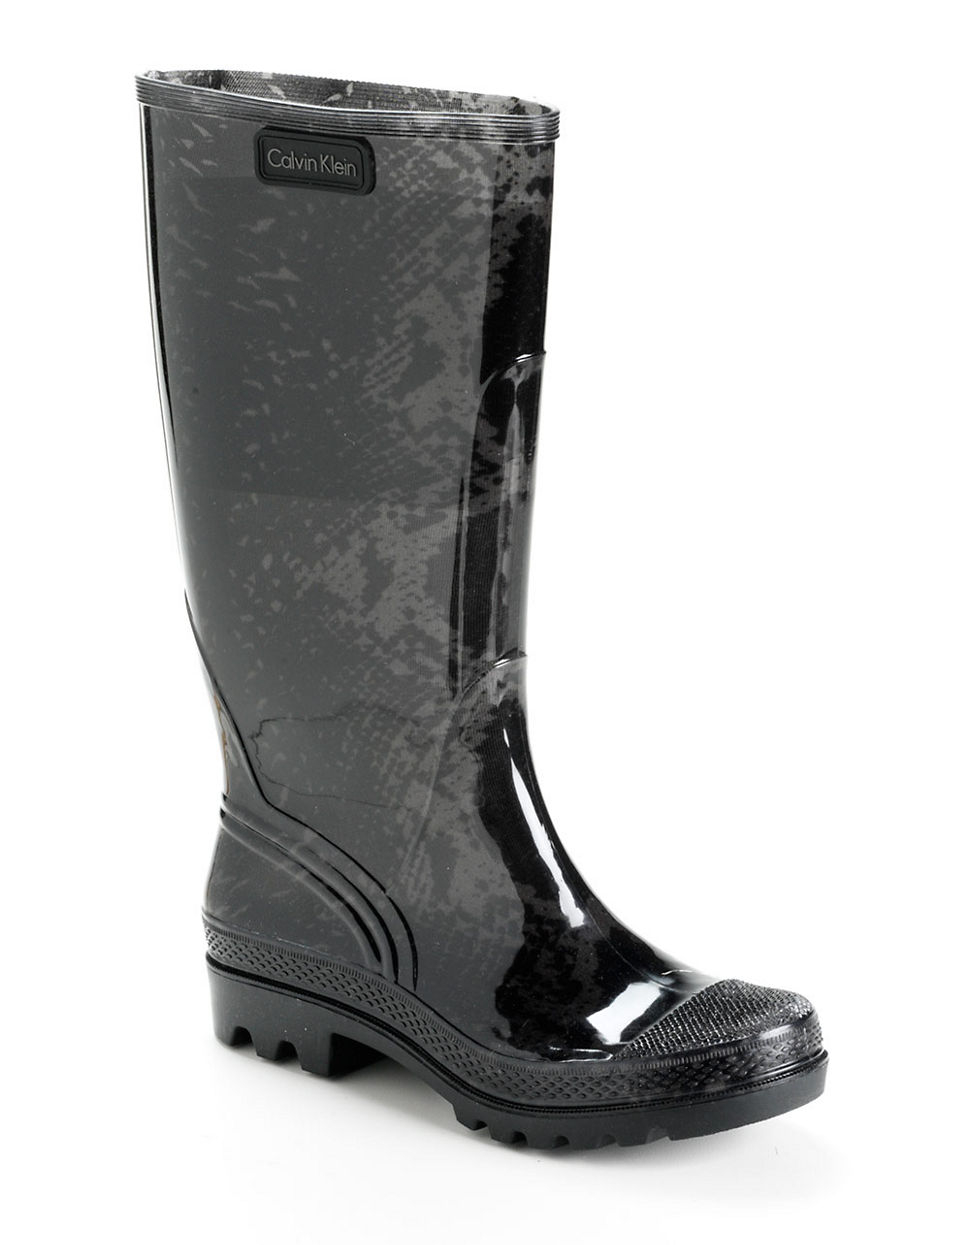 Calvin klein Kirsten Snake Print Rain Boots in Black | Lyst